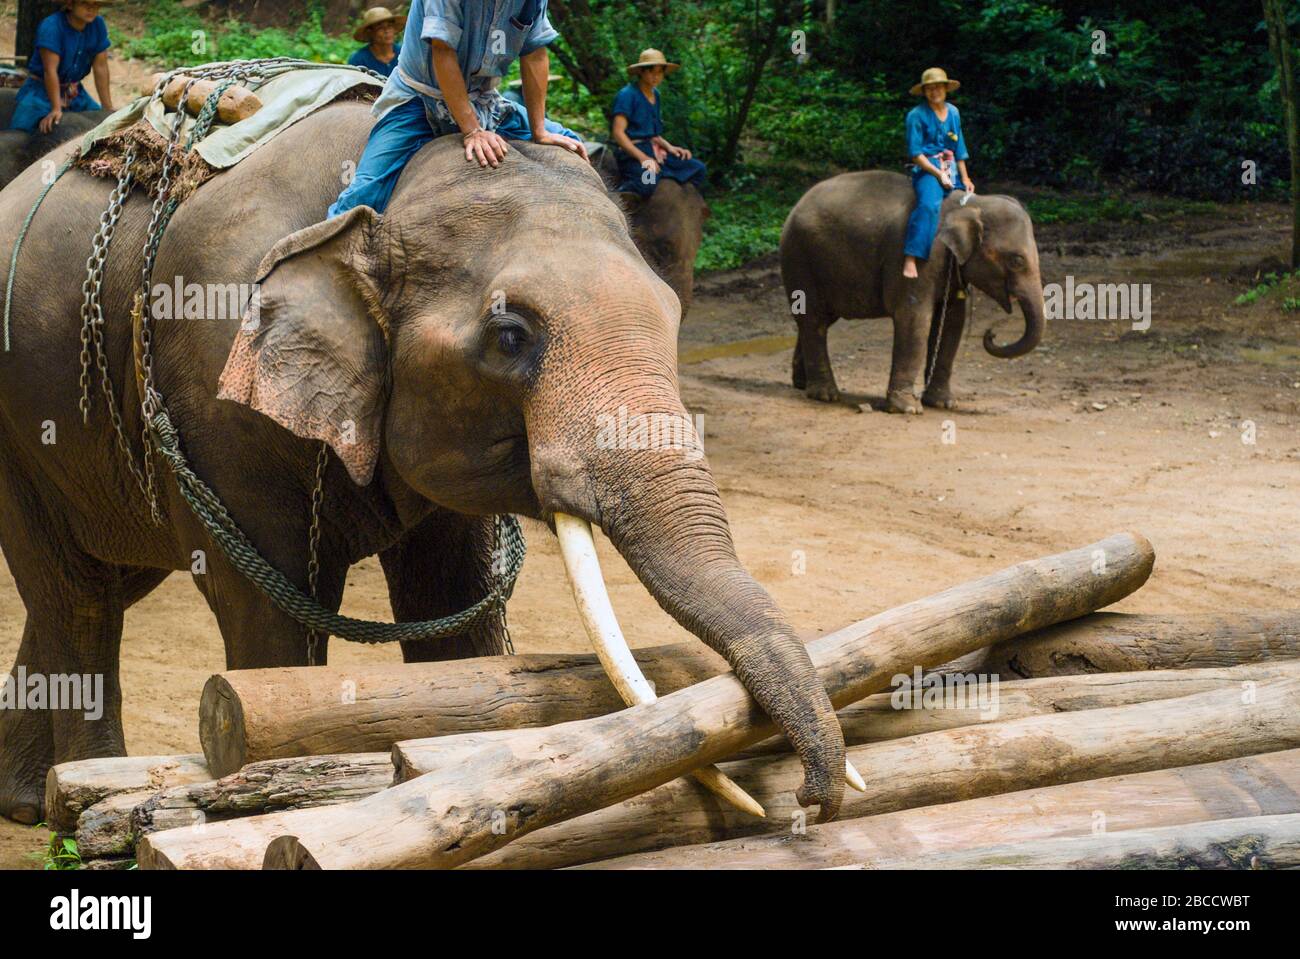 El Centro de Entrenamiento de elefantes Chiang Dao, fundado en 1969. El Centro tiene uno de los paisajes naturales más hermosos de Chiang Mai, Tailandia Foto de stock